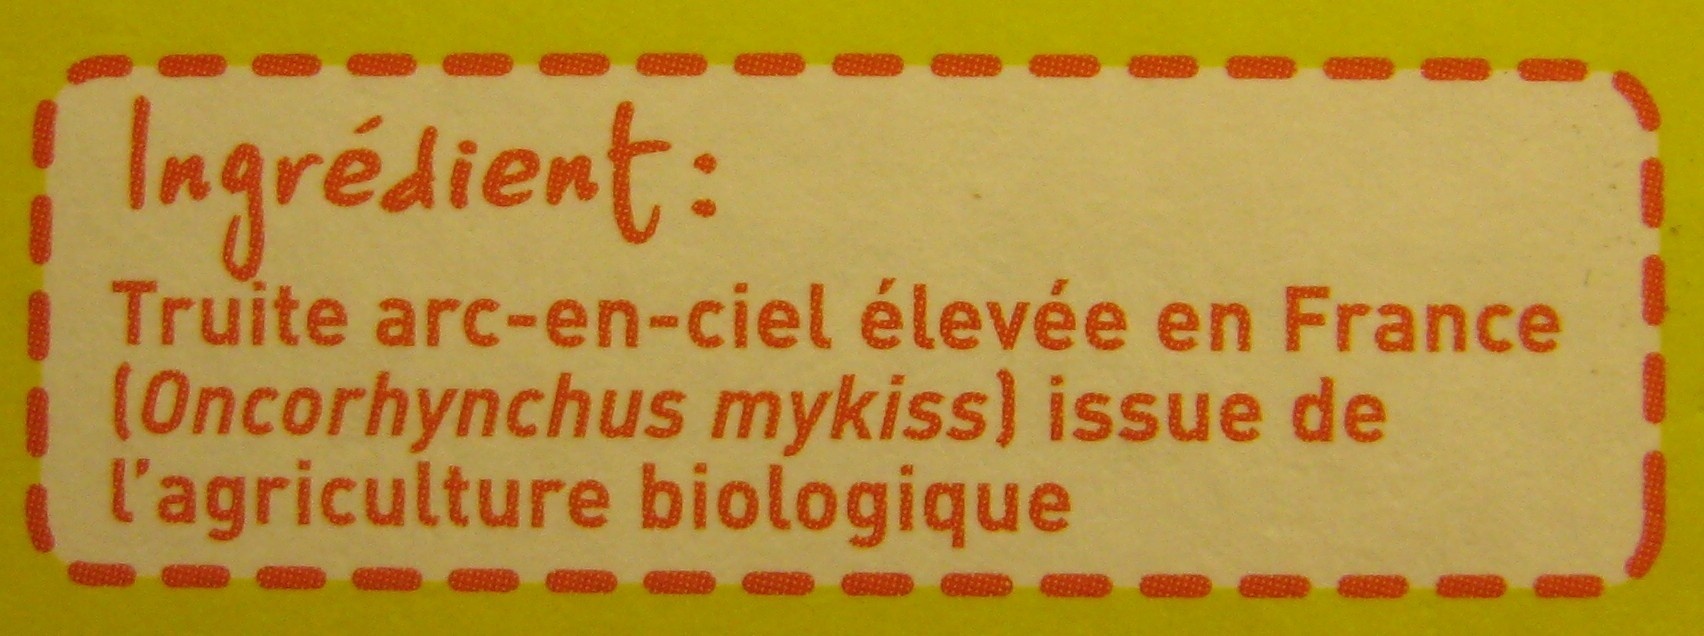 2 pavés de Truite Bio - Ingredients - fr